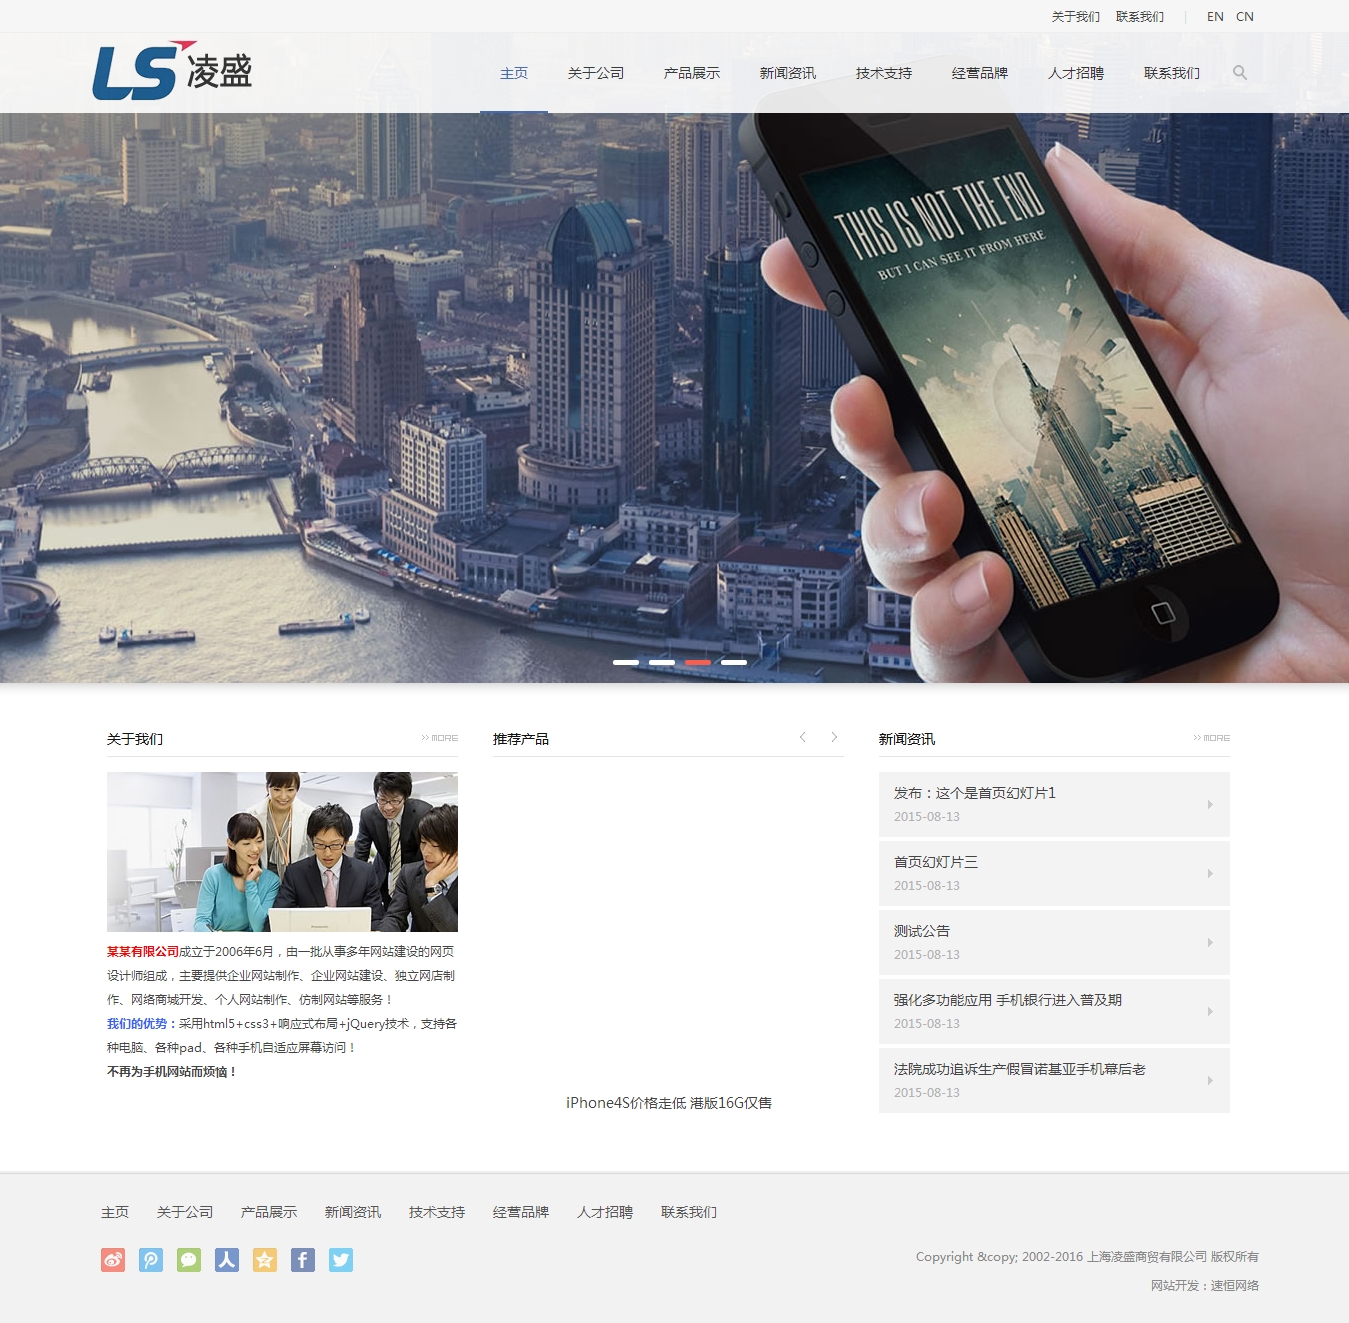 上海凌盛商贸有限公司网站制作案例